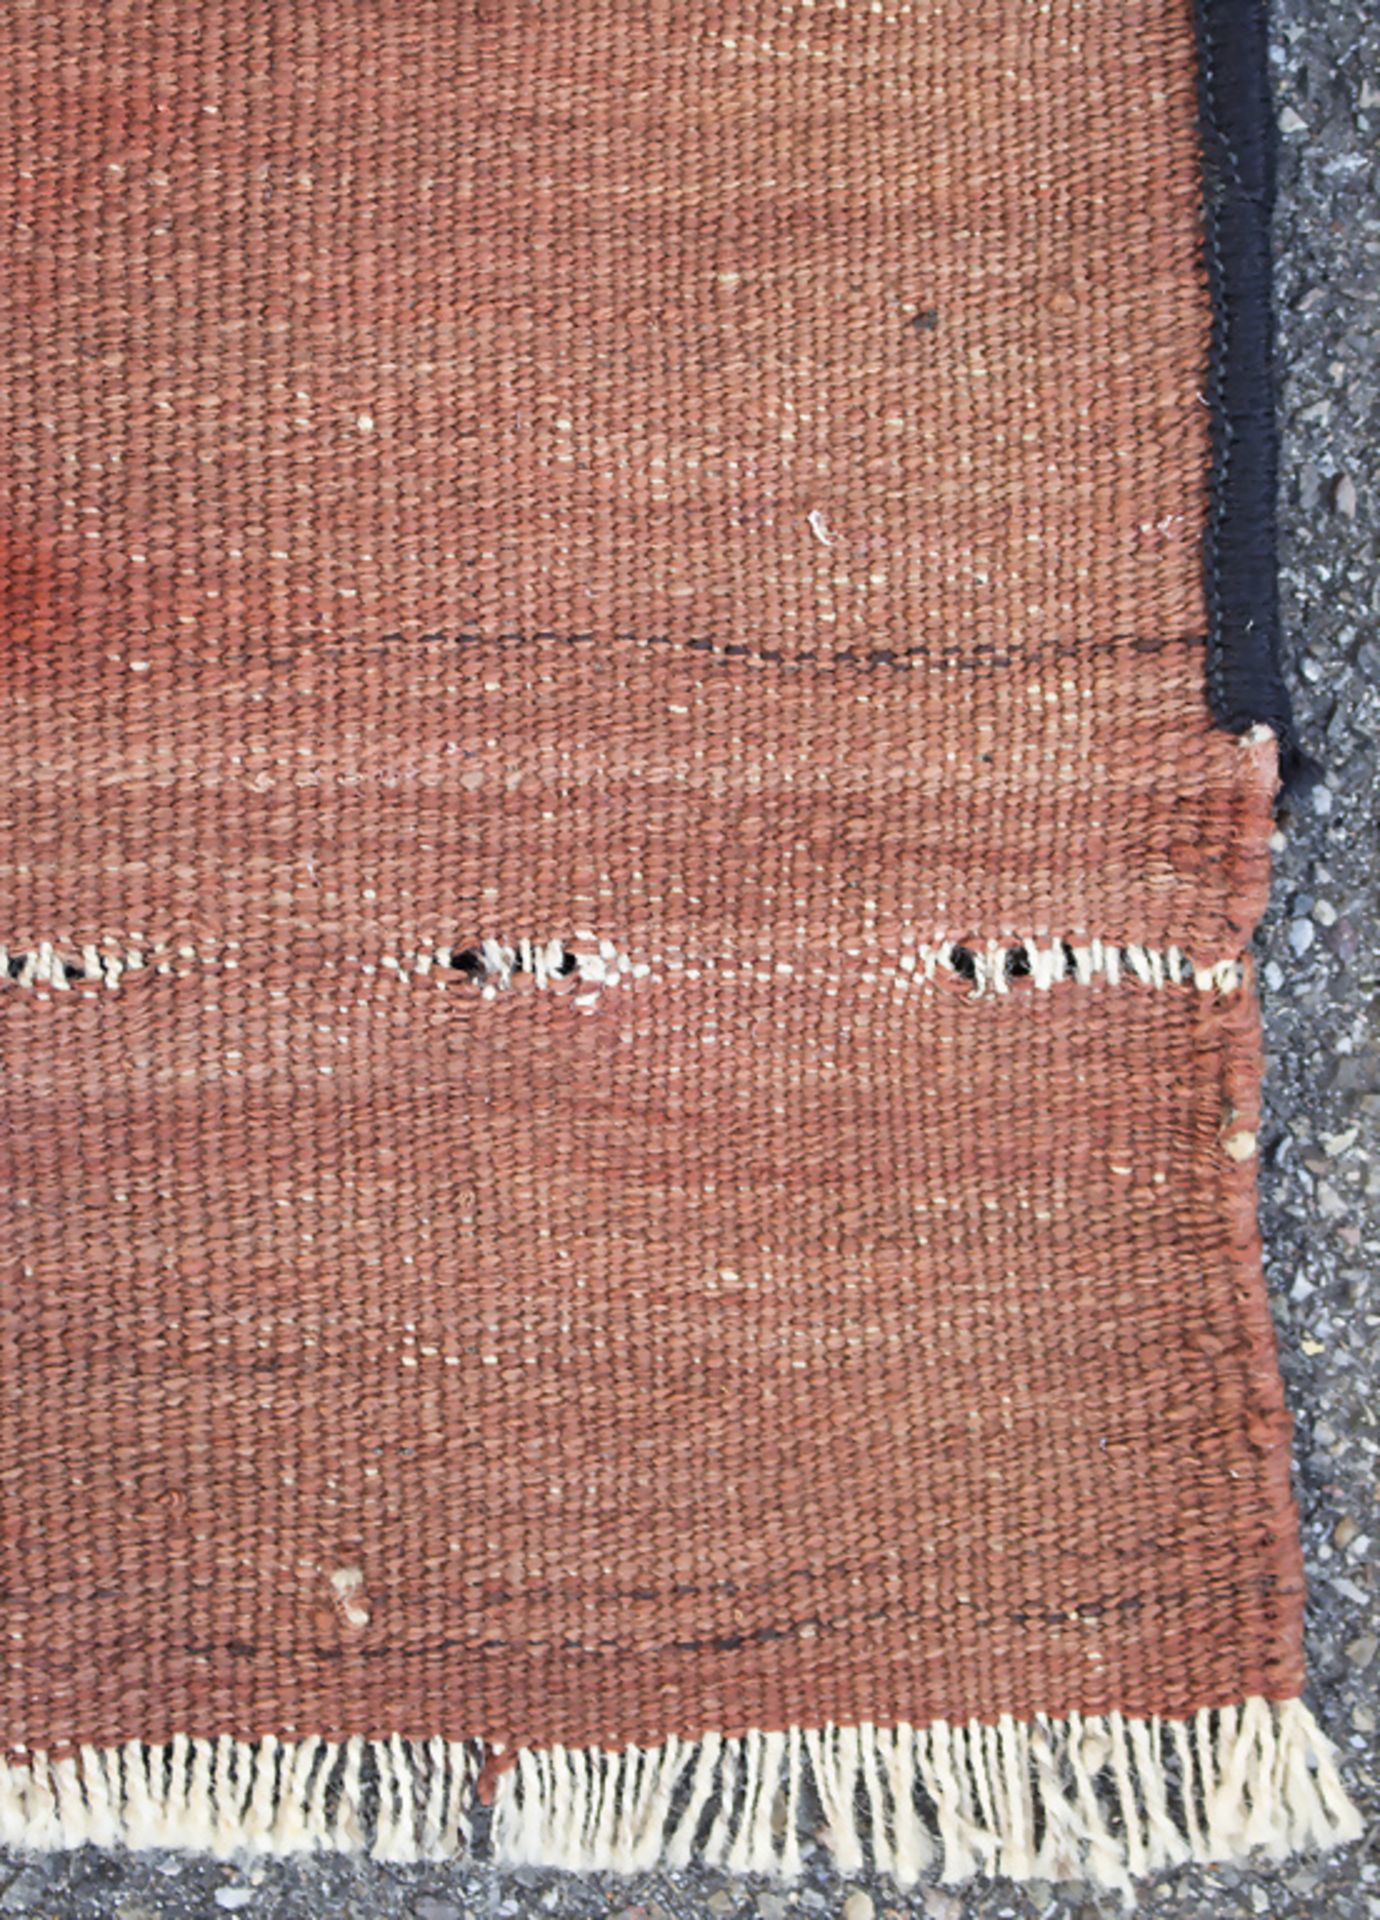 Orientteppich, Zelttasche / An oriental carpet, tentbag - Image 4 of 4